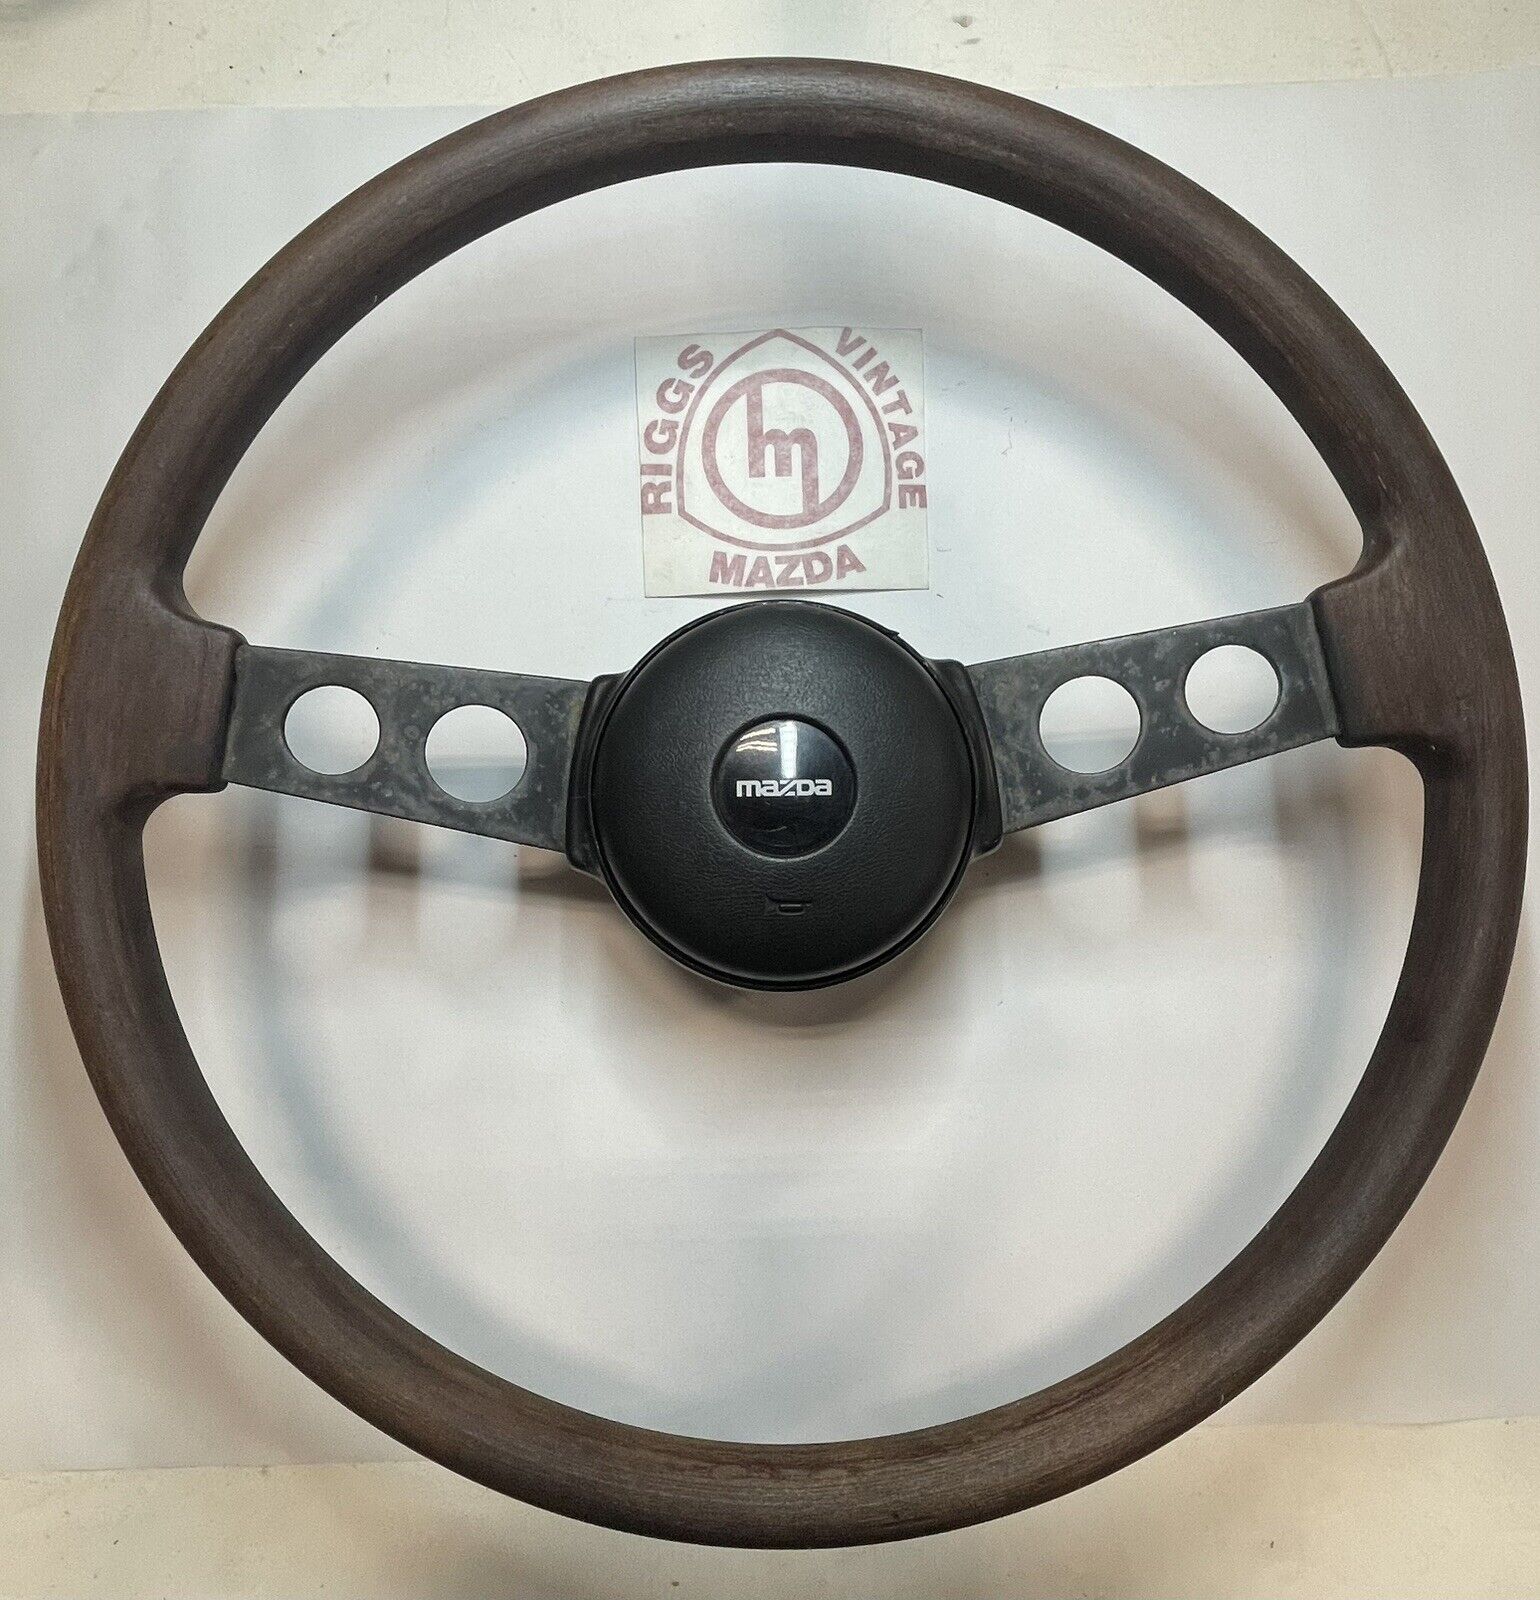 Mazda 323 wood grain steering wheel